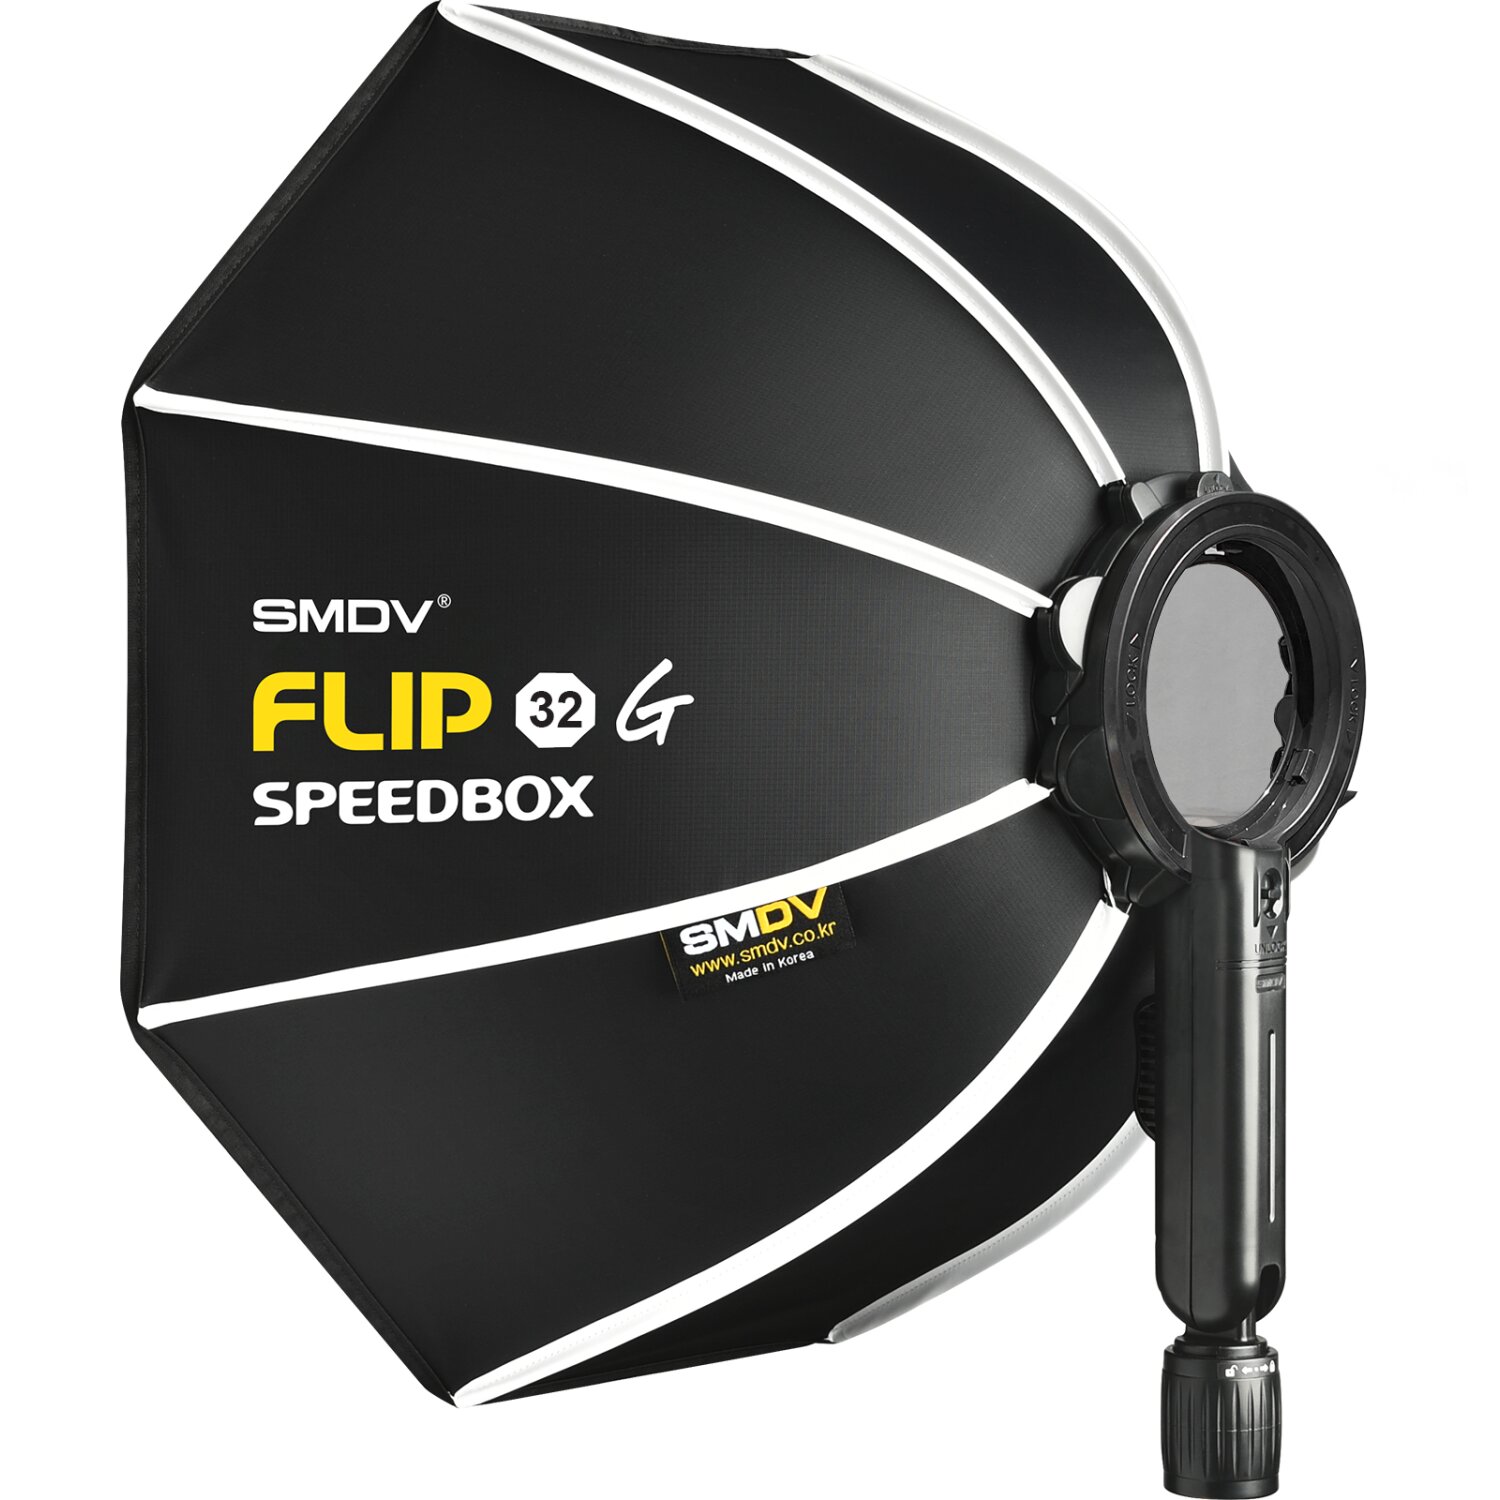 Impulsfoto SMDV Softbox Speedbox-Flip G 32 | 80cm Ø | Einsatzbereit in 1 Sekunde